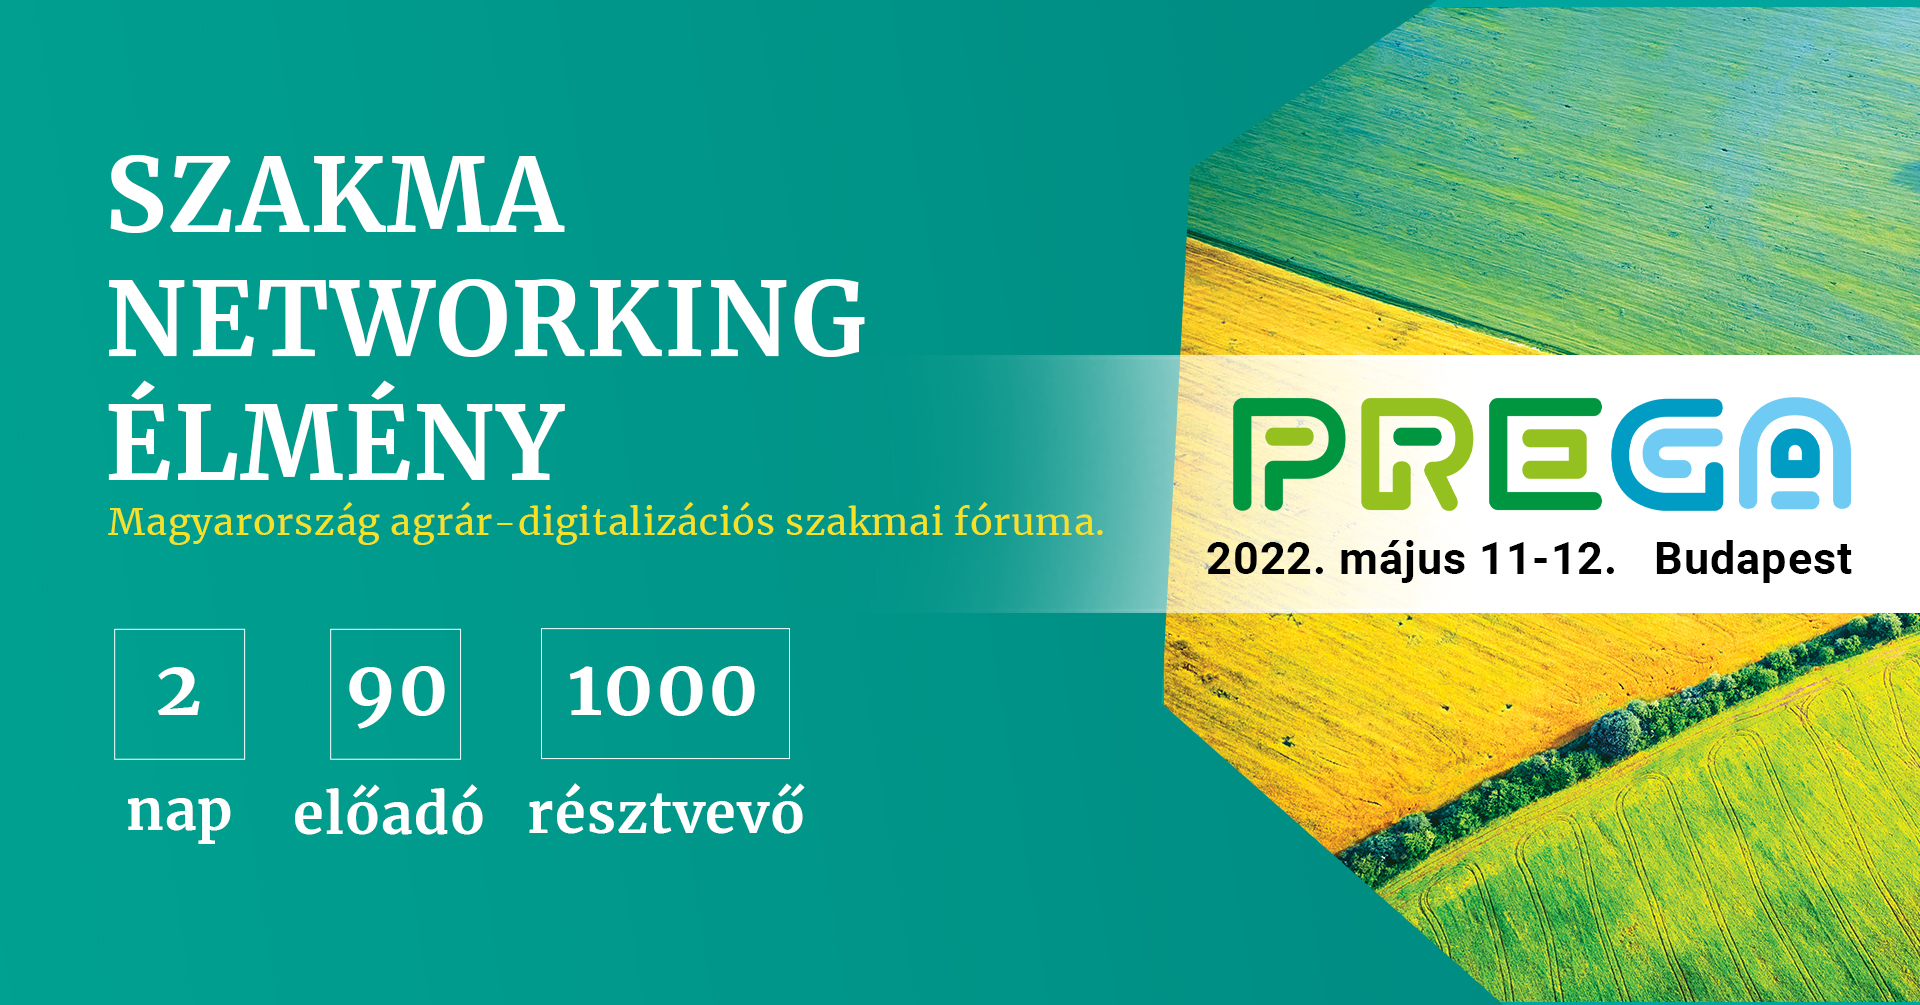 PREGA 2022 – Precíziós Gazdálkodási Konferencia és Kiállítás